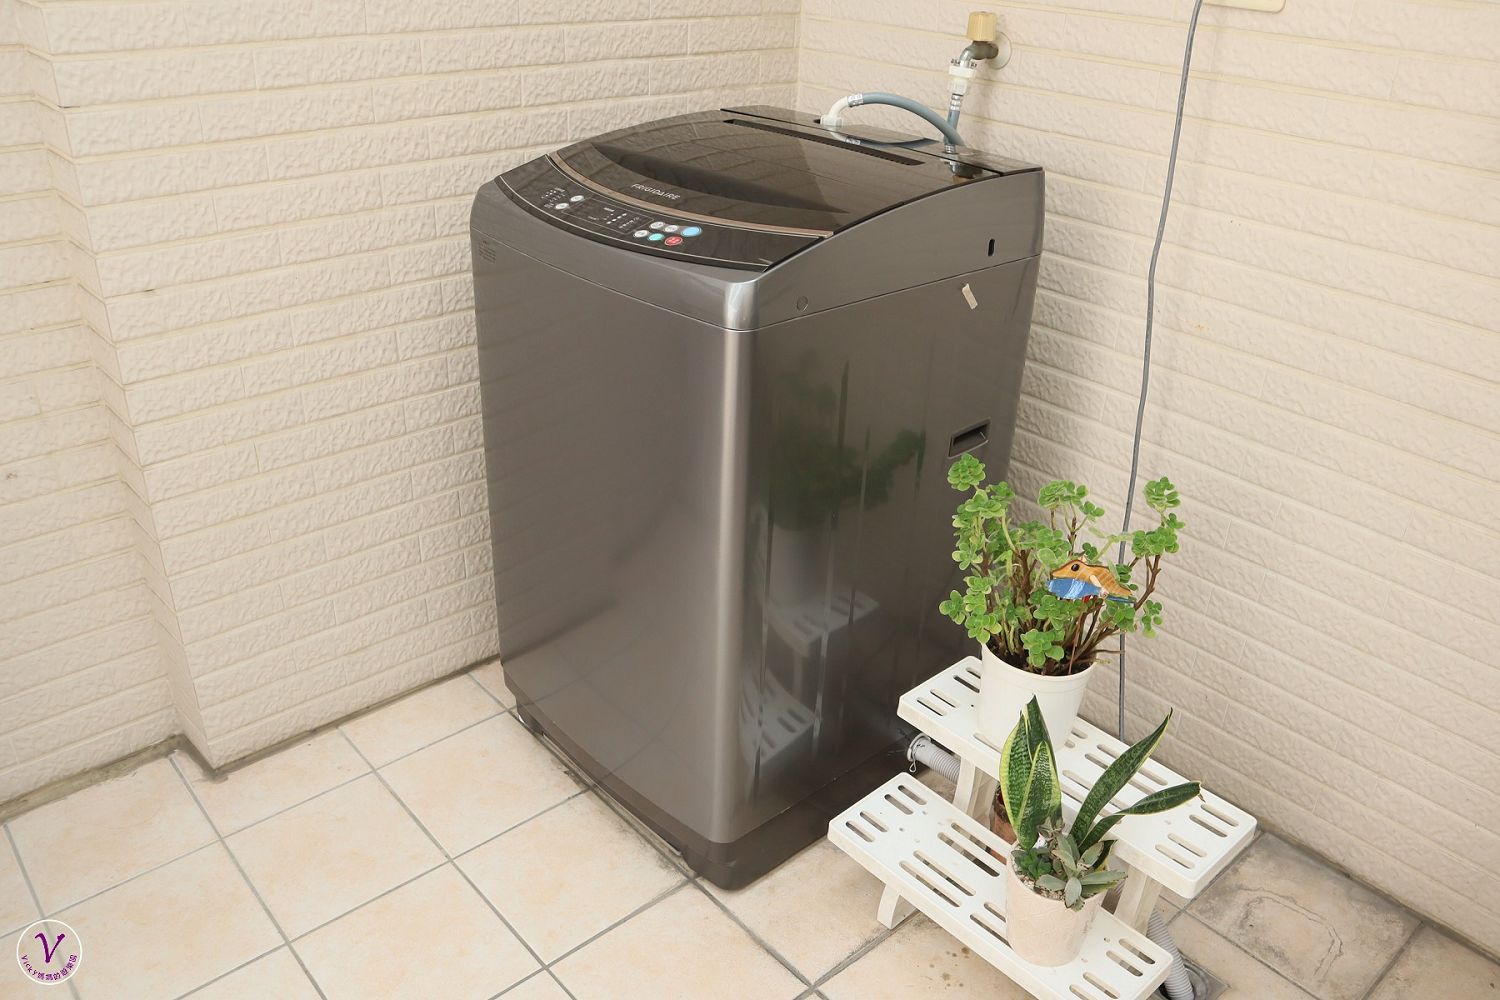 變頻洗衣機推薦︱12KG 雙變頻好取窄身洗衣機：節能省水雙認證，適用小空間，桶風乾功能有效降低桶身異味，一台也適合孩子高度的洗衣機，洗衣機開箱文